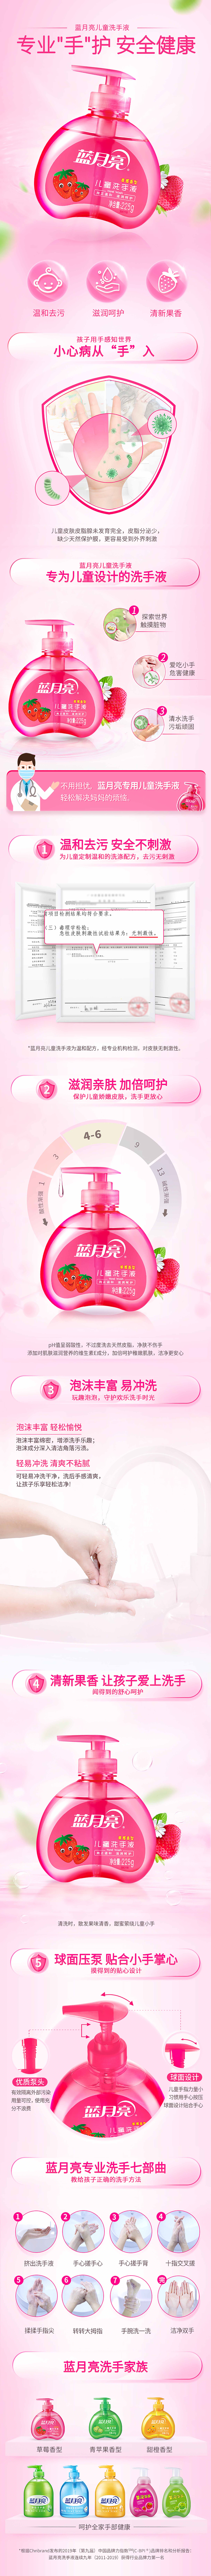 儿童洗手液-草莓-色调调整.jpg